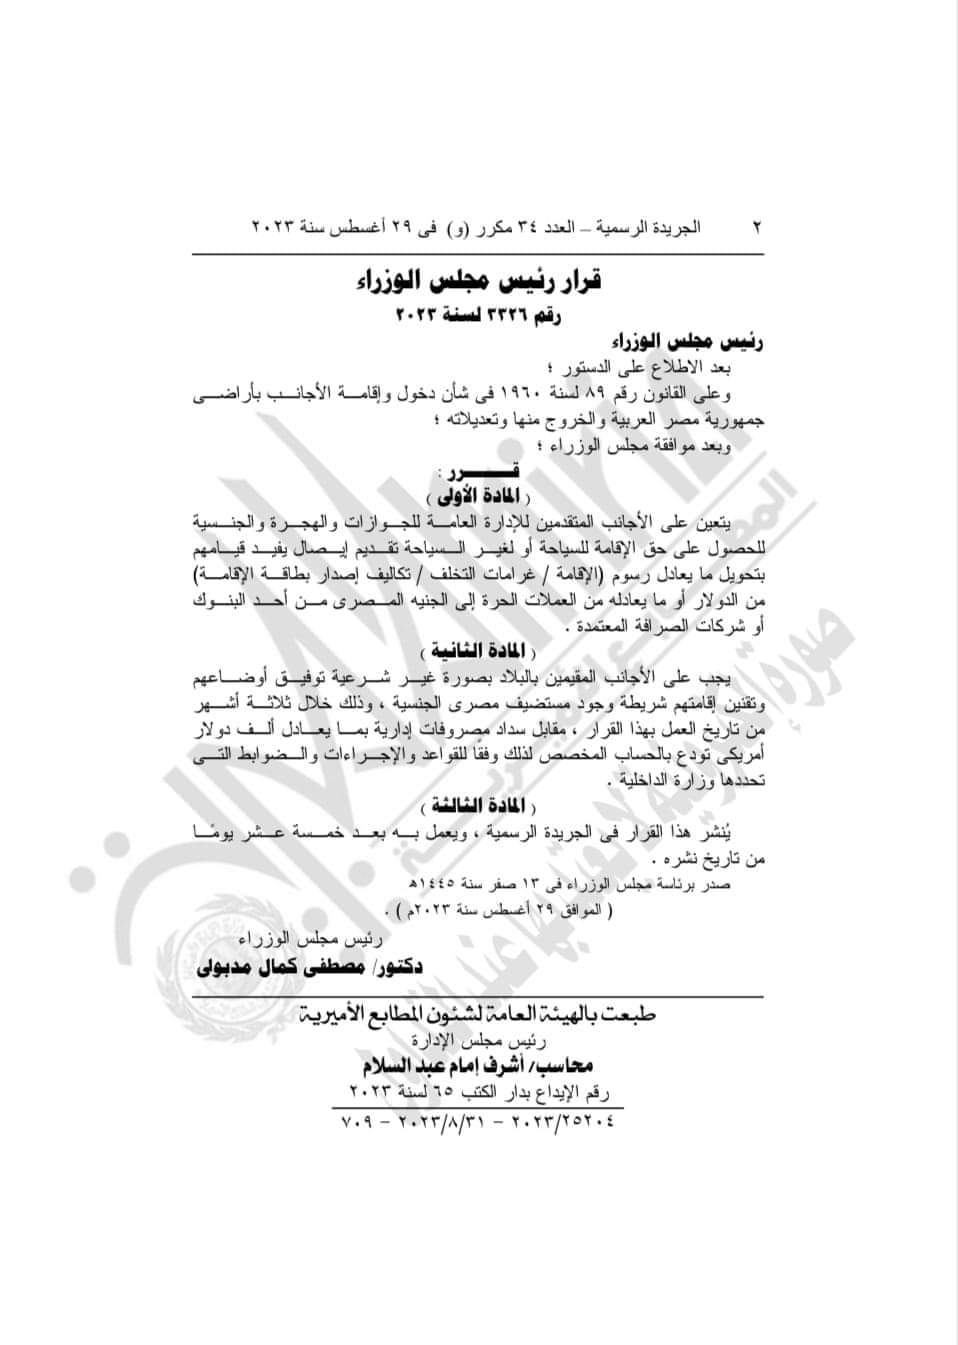 بيان من الداخلية للأجانب المقيمين في مصر بصورة غير قانونية